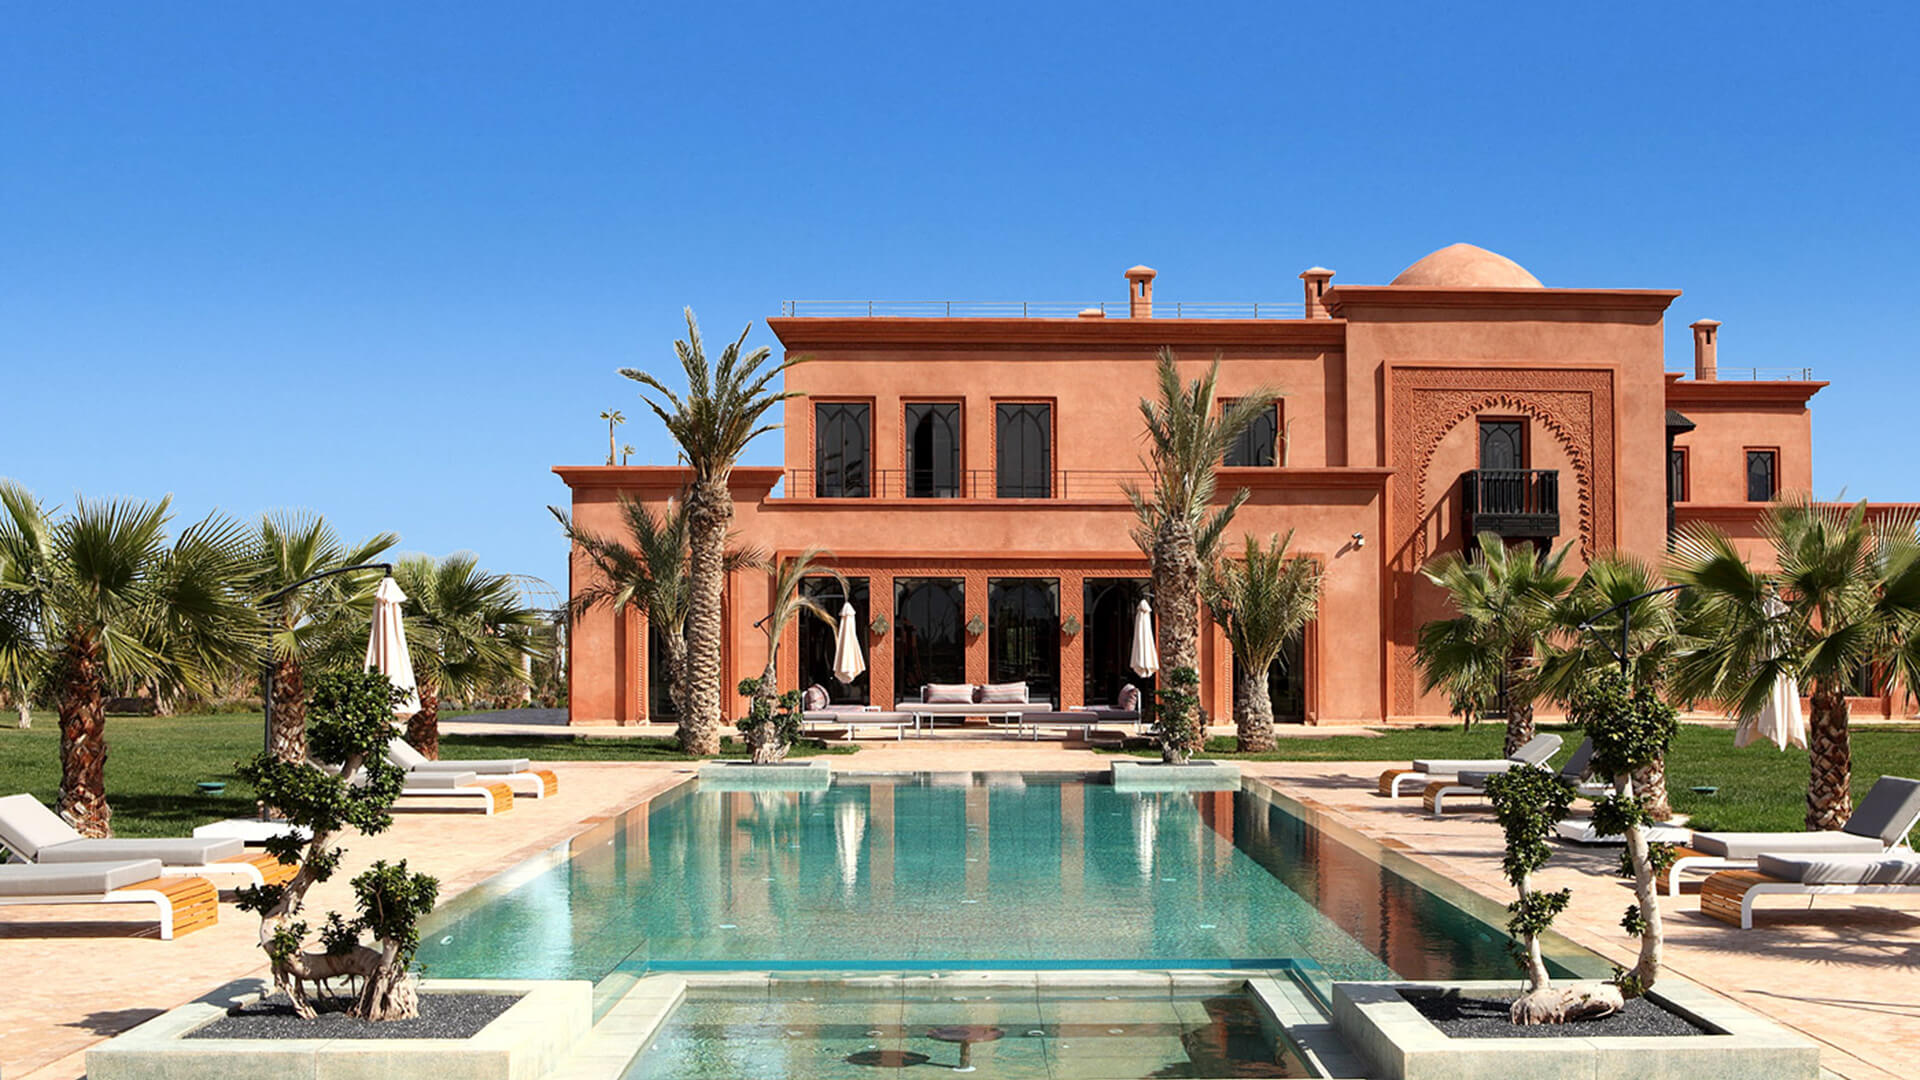 Magnifique villa au style marocain